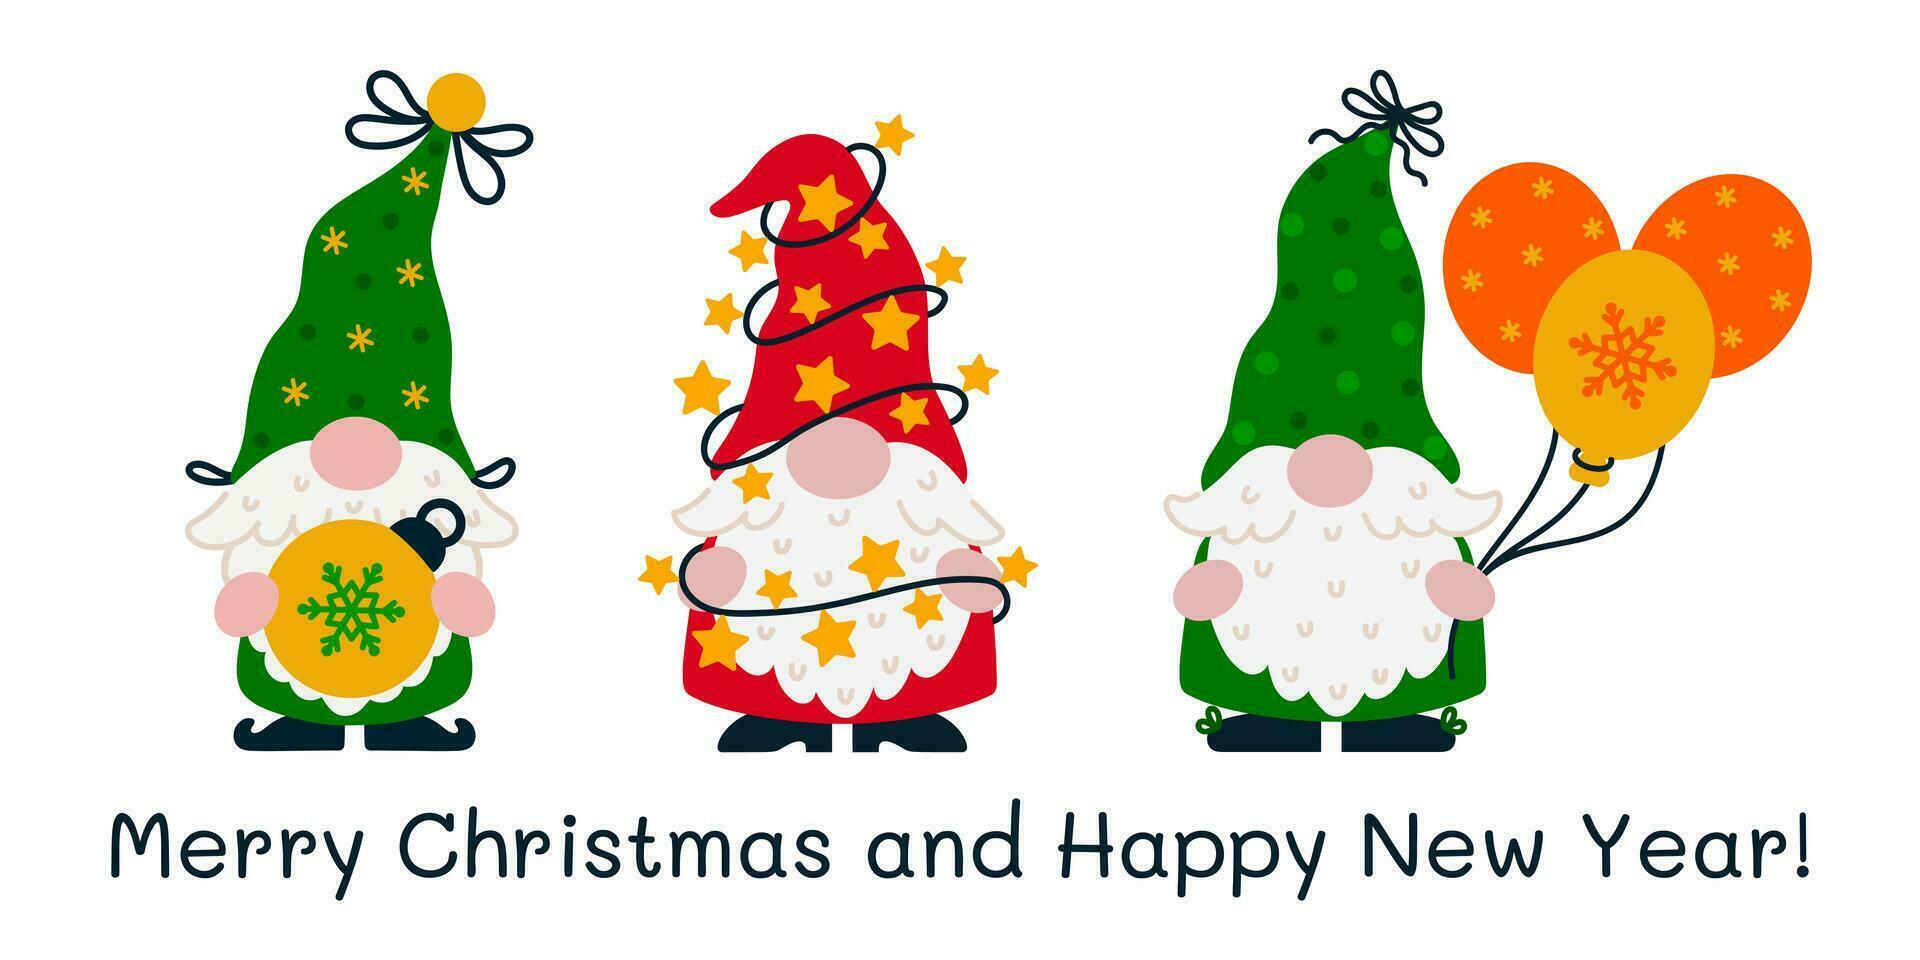 fiesta gnomos vector colocar. linda gracioso elfos son participación un Navidad árbol juguete, guirnalda con estrellas y luces, globos con copo de nieve impresión. Papa Noel claus ayudantes en un media tapas. plano dibujos animados clipart